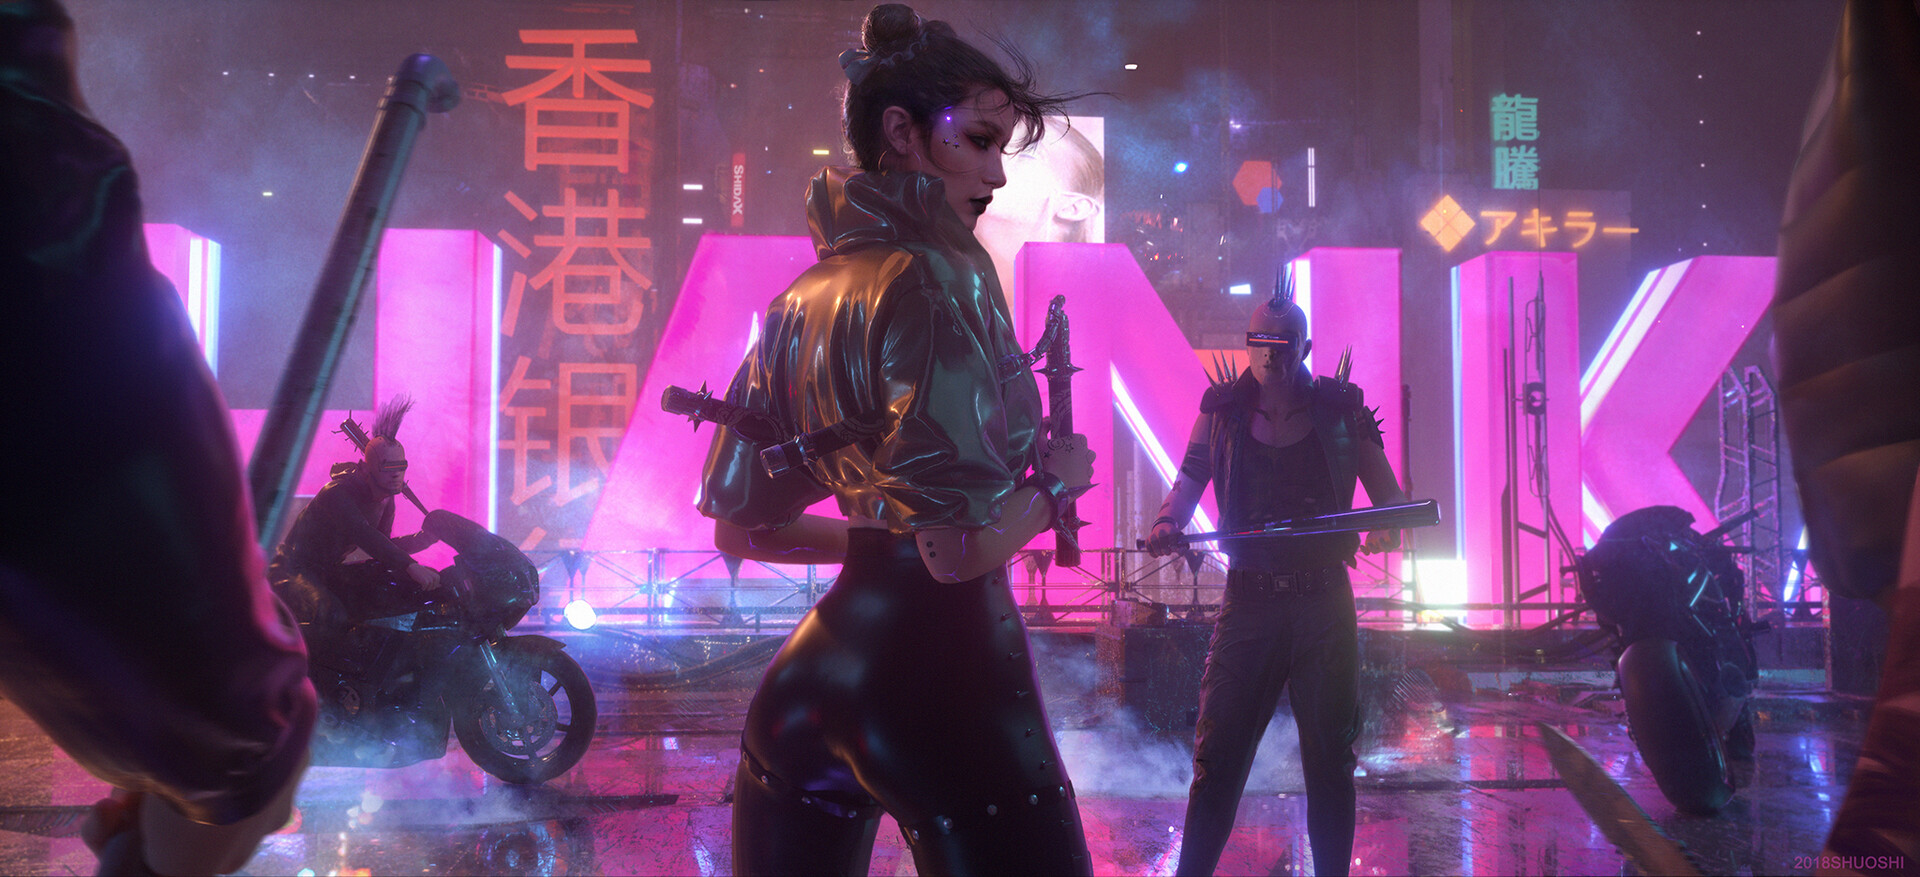 General 1920x877 cyberpunk women Asian futuristic science fiction pink Shuo Shi motorcycle